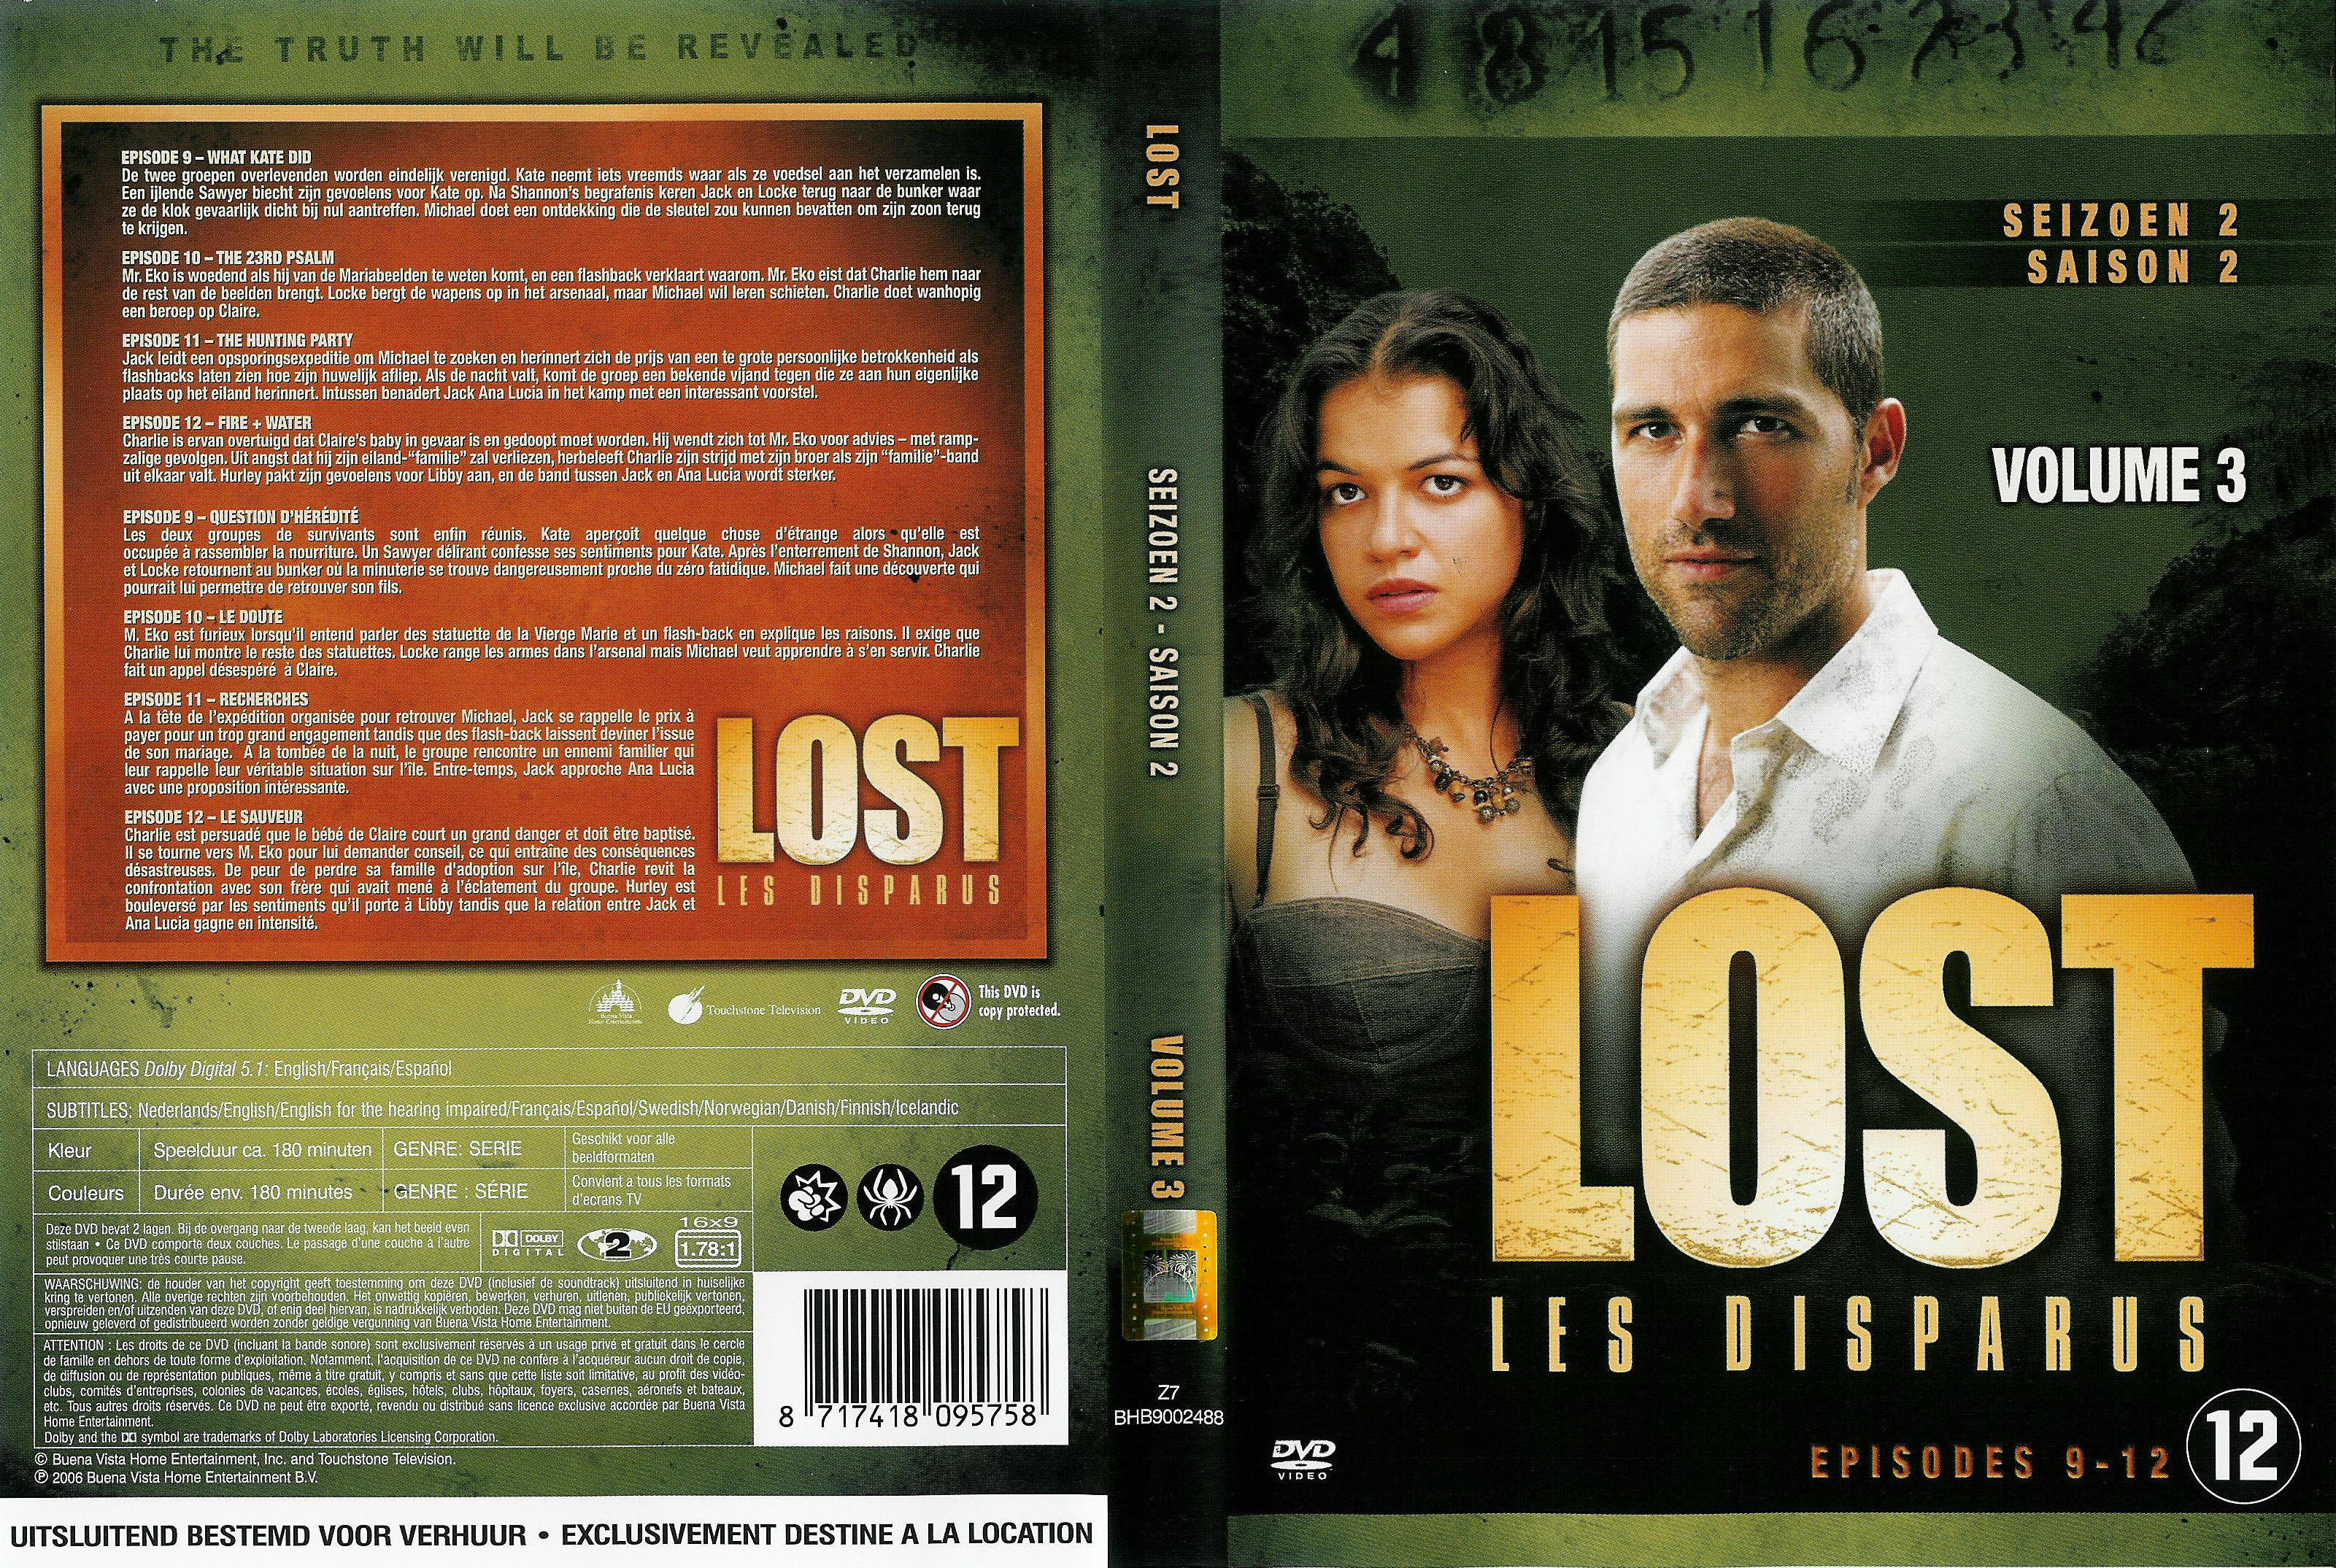 Jaquette DVD Lost Saison 2 DVD 3 v2